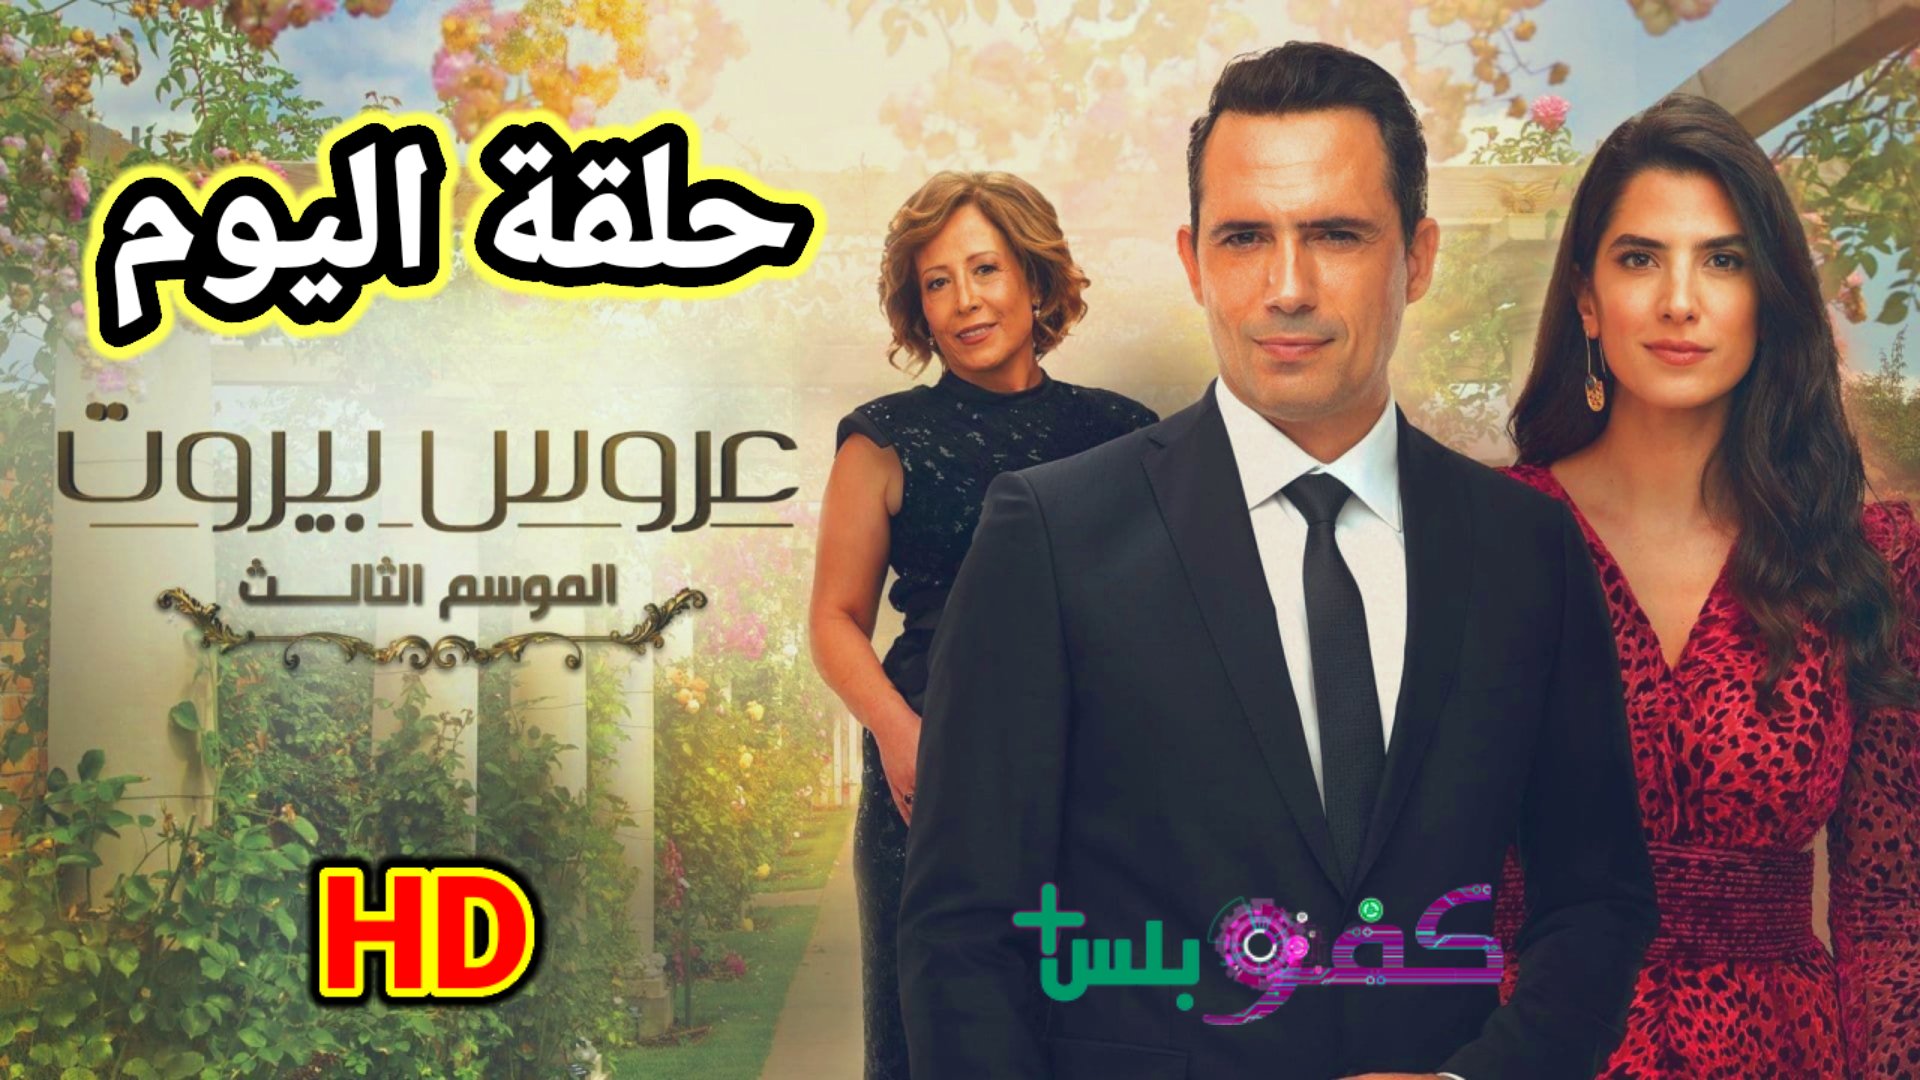 مسلسل عروس بيروت الجزء الثالث حلقة اليوم كاملة